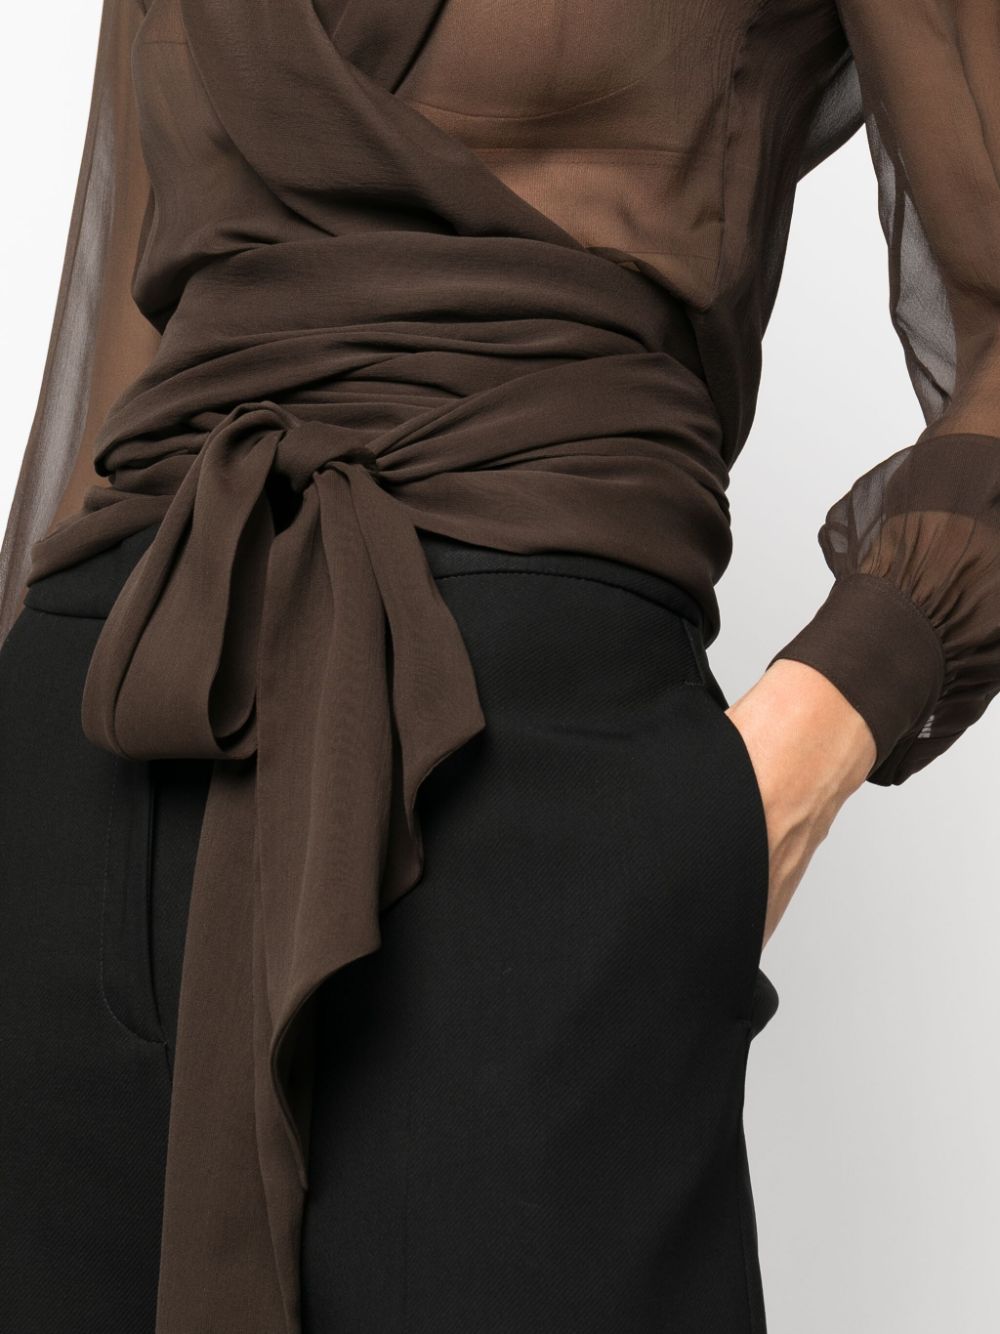 Áo khoác khoét cổ vải lụa organic màu nâu cho phụ nữ